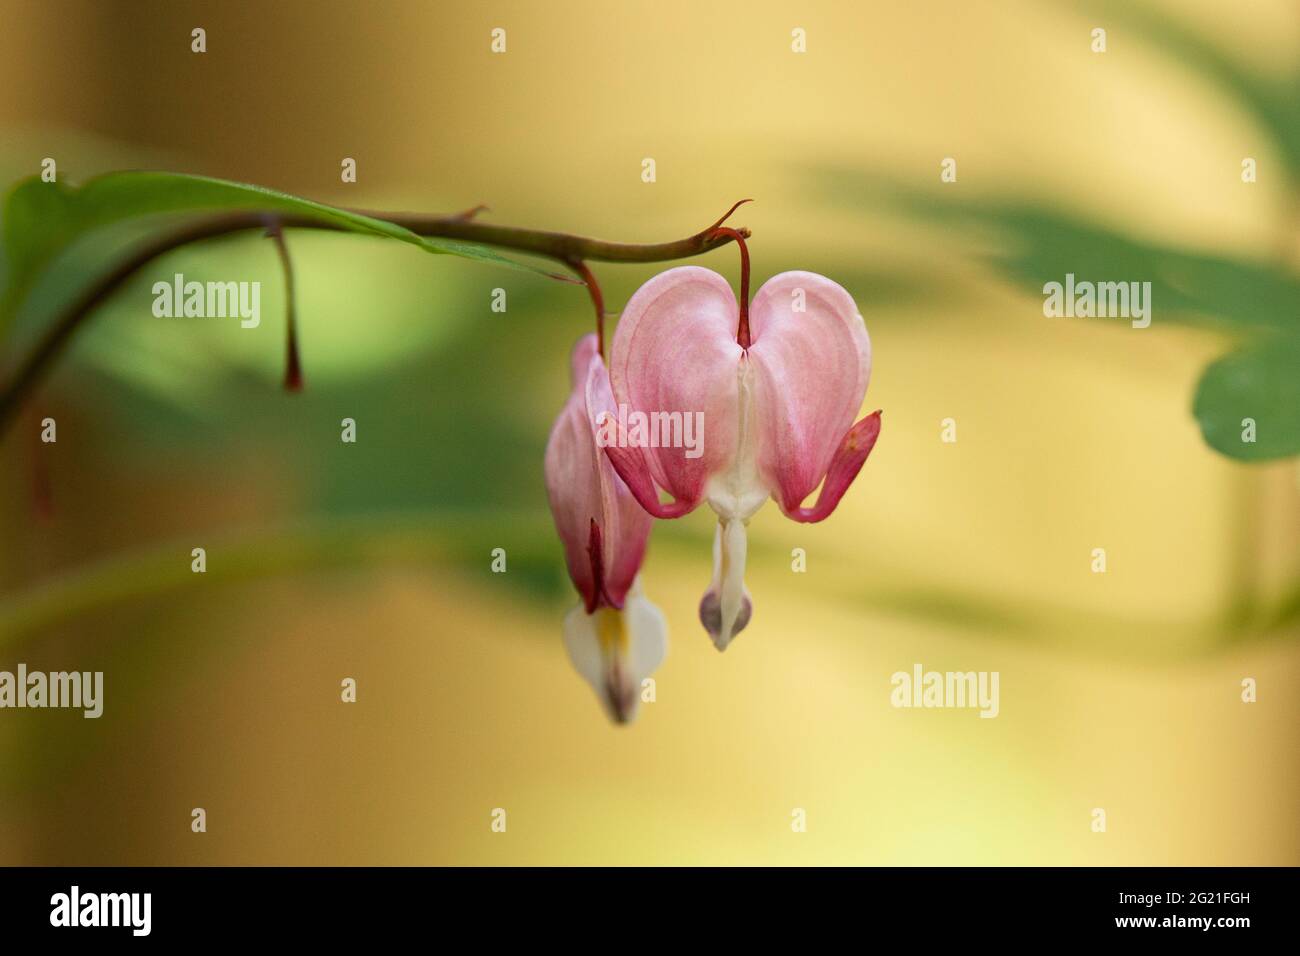 Lamprocapnos spectabilis rose et blanc, connu sous le nom de coeur saignant, bourgeons de Fallope, coeur saignant asiatique, fleur lyre, fleur de coeur, ou une dame dans une baignoire. Banque D'Images